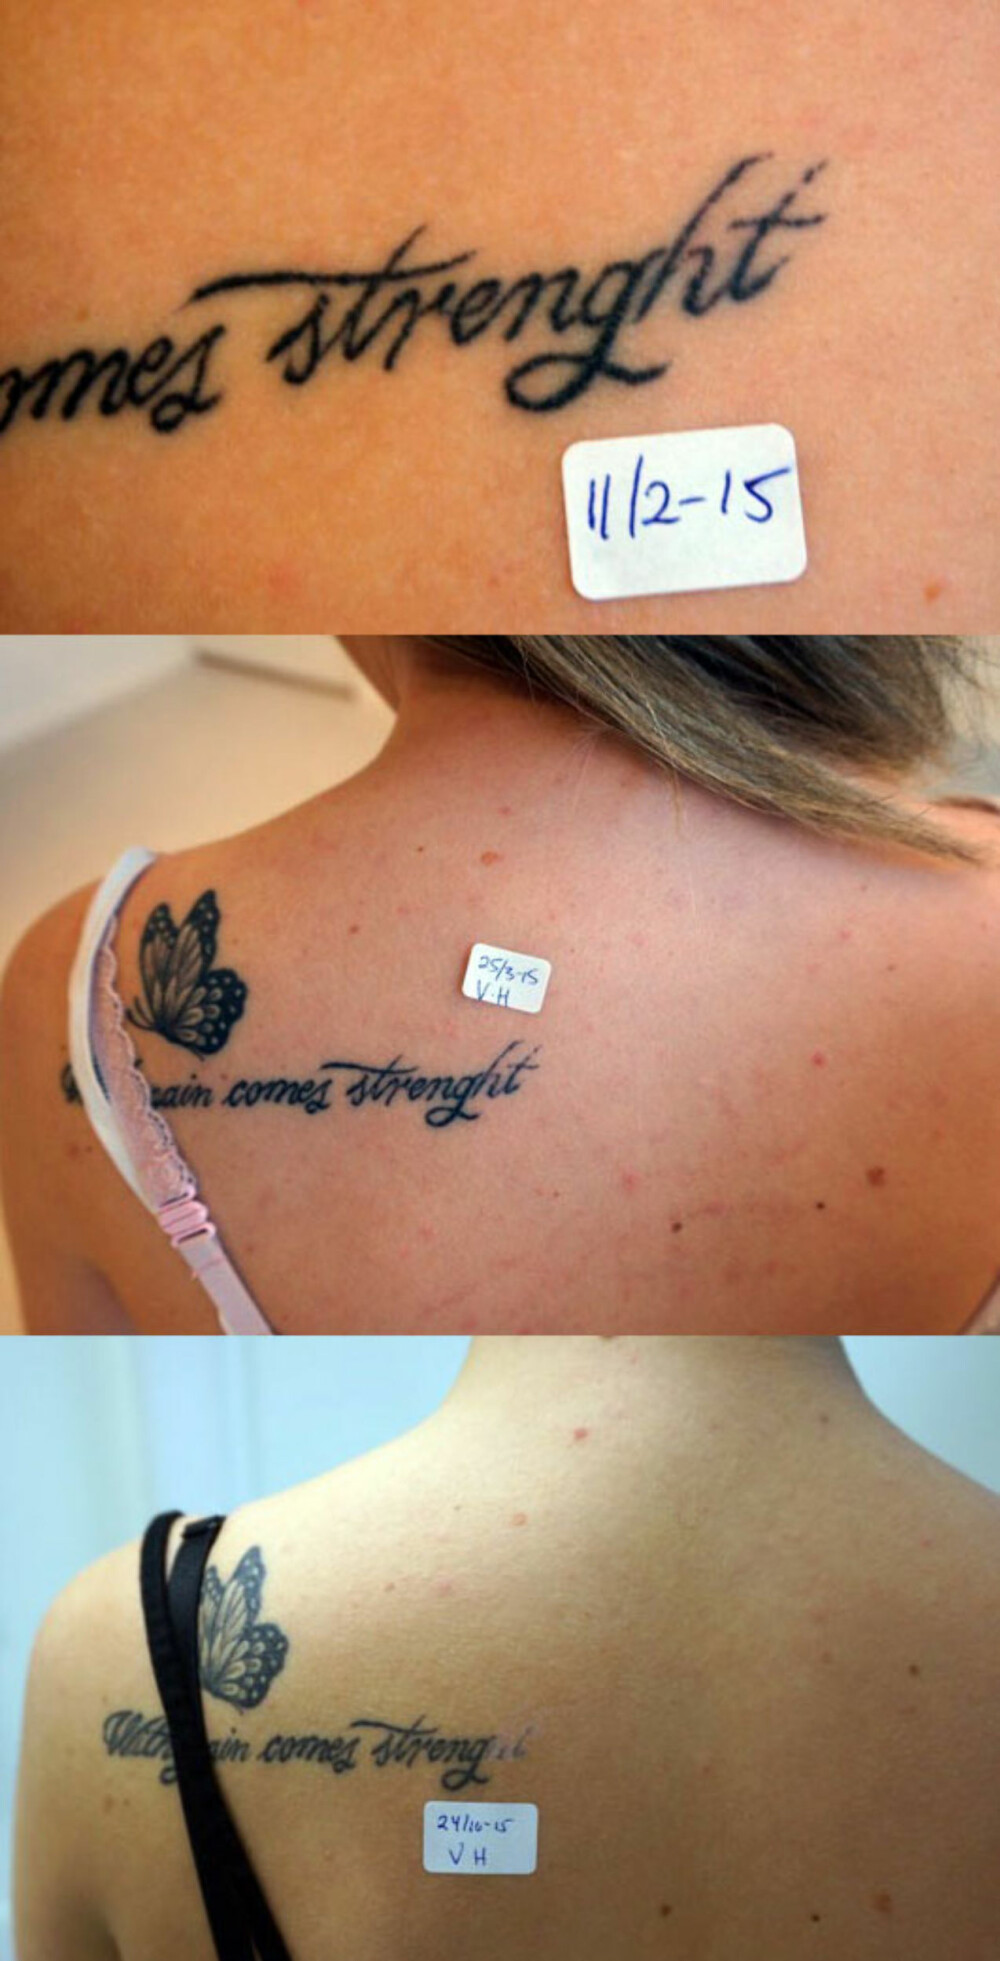 SKRIVELEIF: Det er ikke noe særlig å vandre rundt med skrivefeil på tatoveringen. Derfor var det naturlig for denne kvinnen å fjerne de to siste bokstavene for å kunne rette på tatoveringen igjen etterpå. Om du skulle lure; det skrives "strength", ikke "strenght".